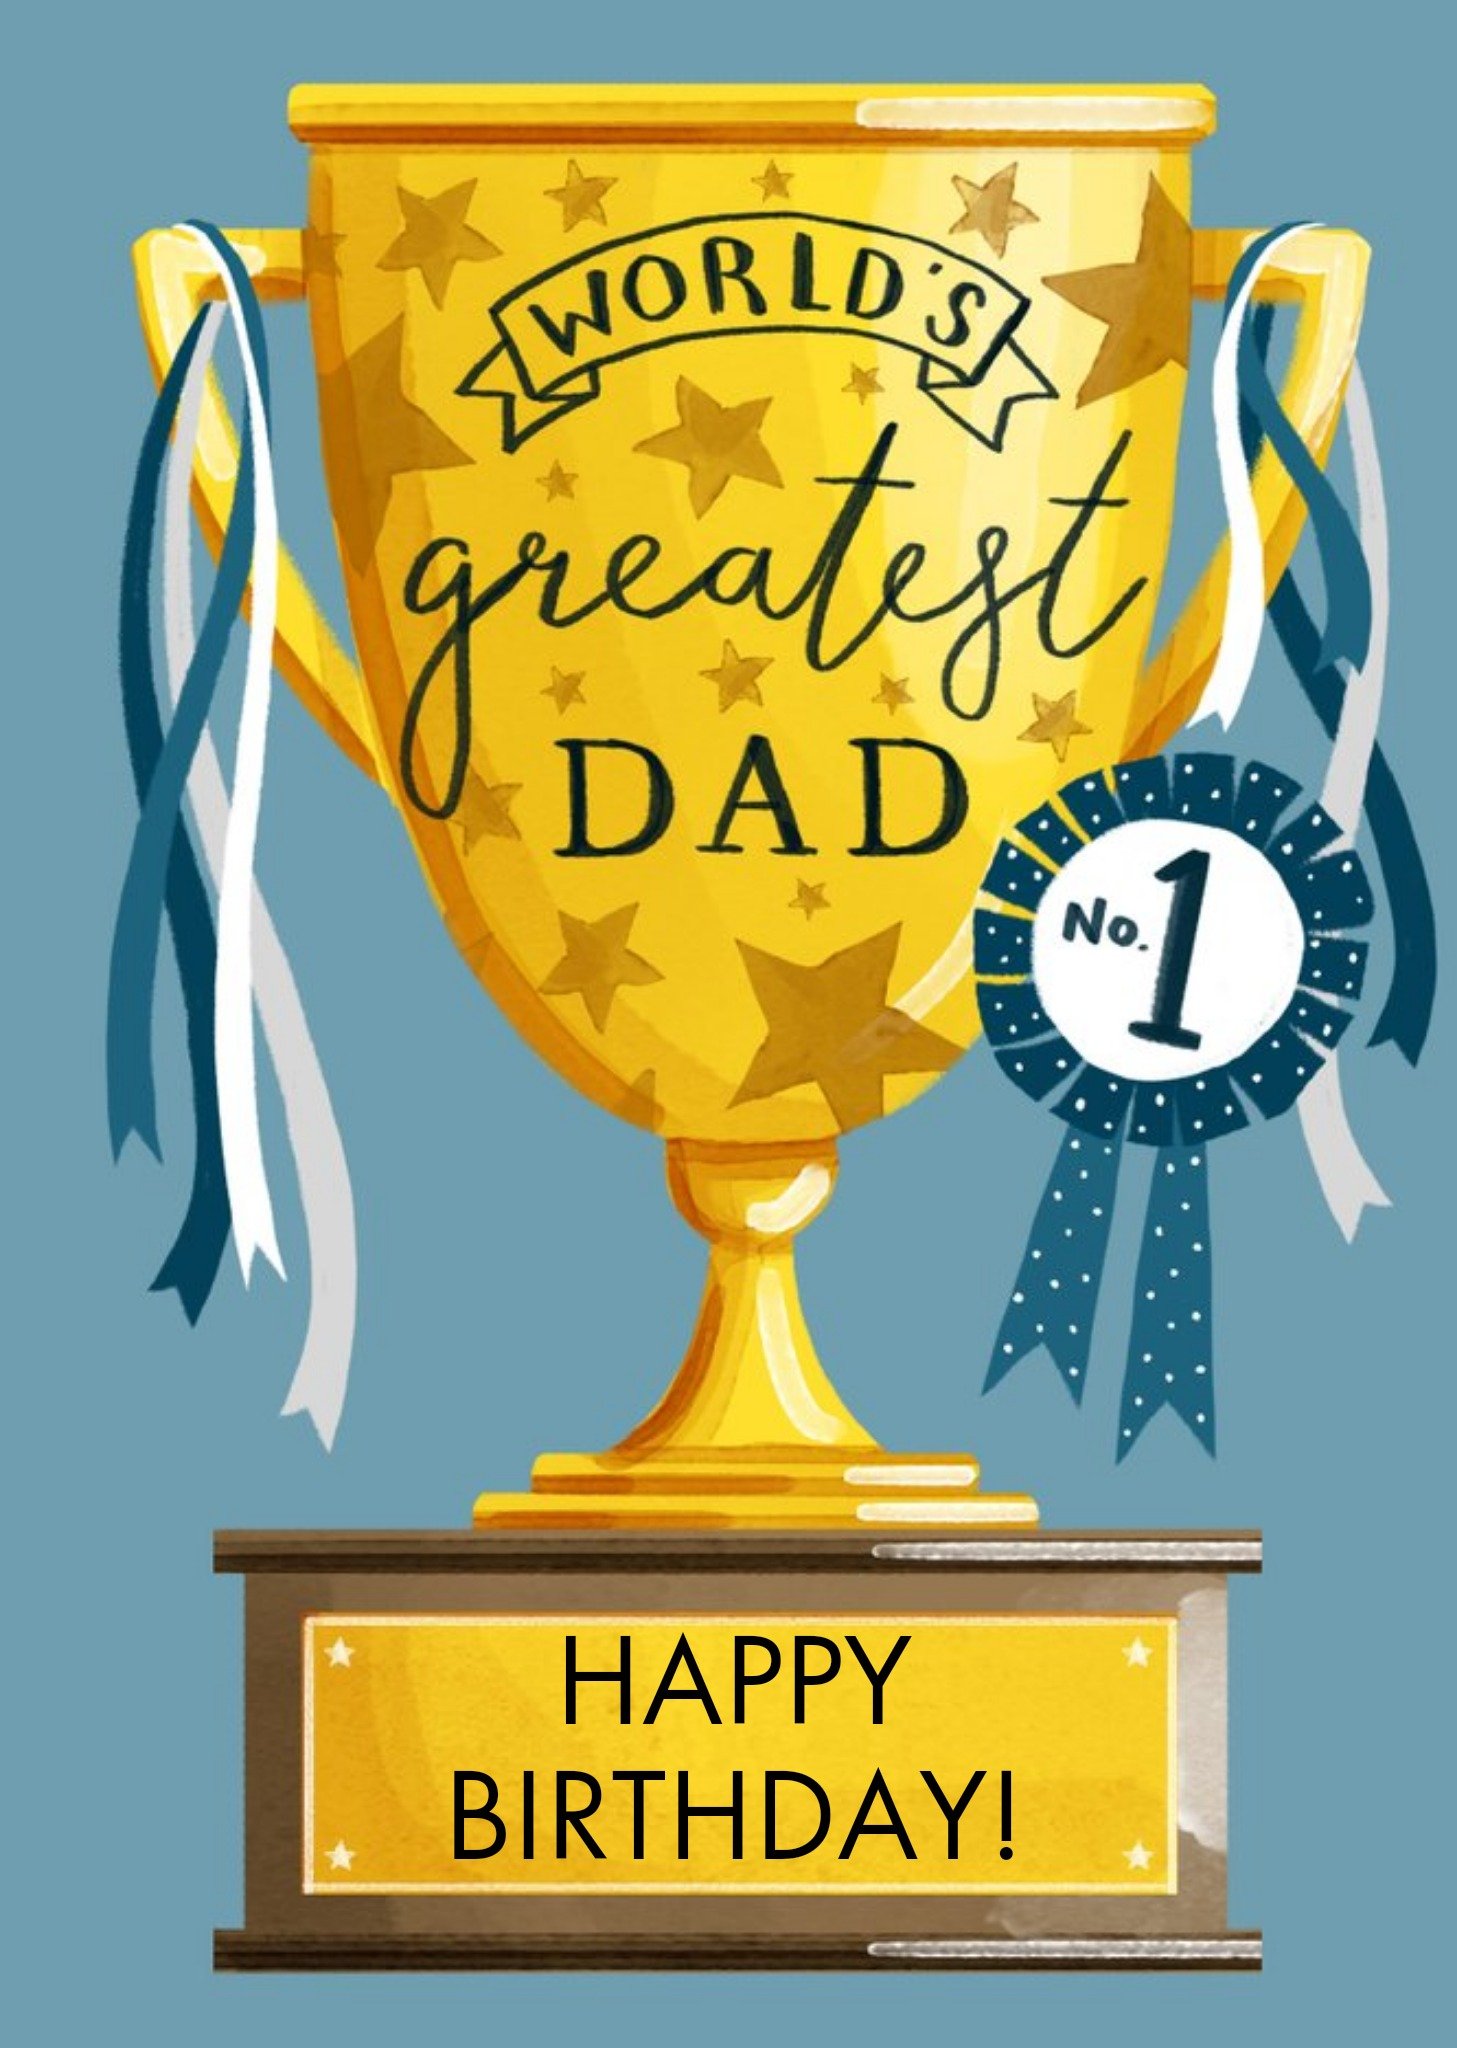 Okey Dokey Design Worlds Greatest Dad Trophy Illustration No.1 Birthday Card Ecard